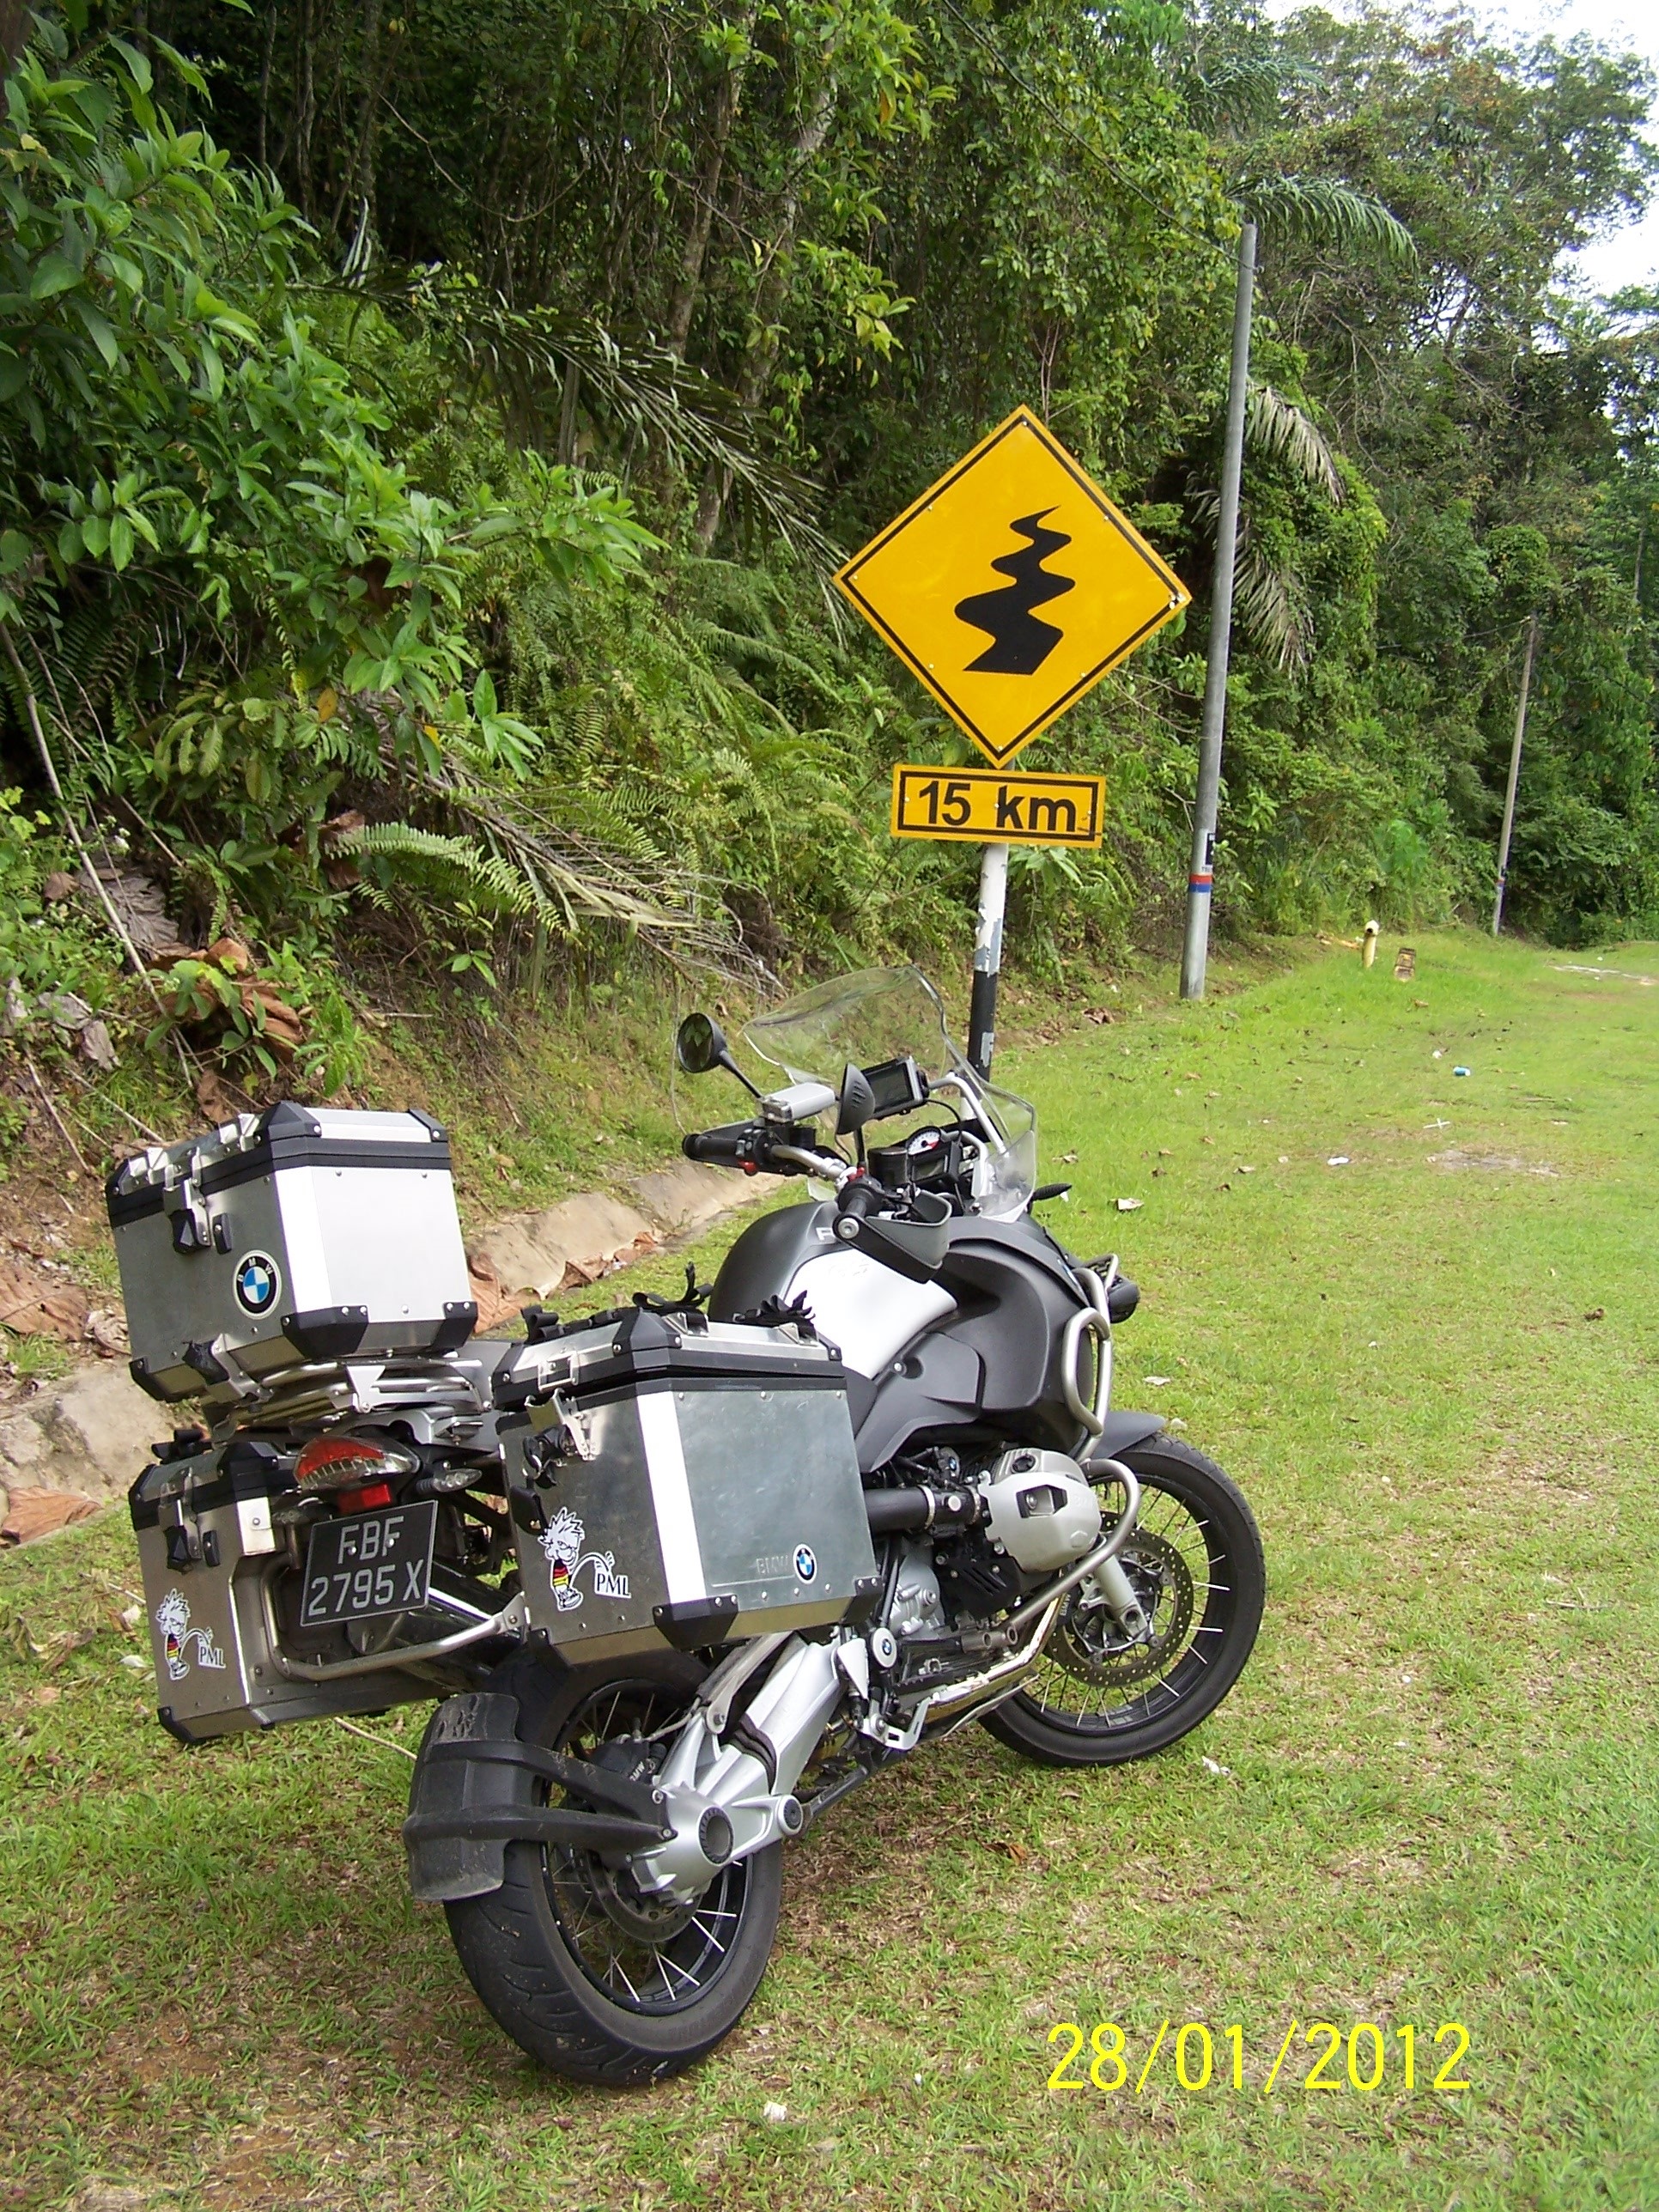 Mein liebstes Schild in Malaysia